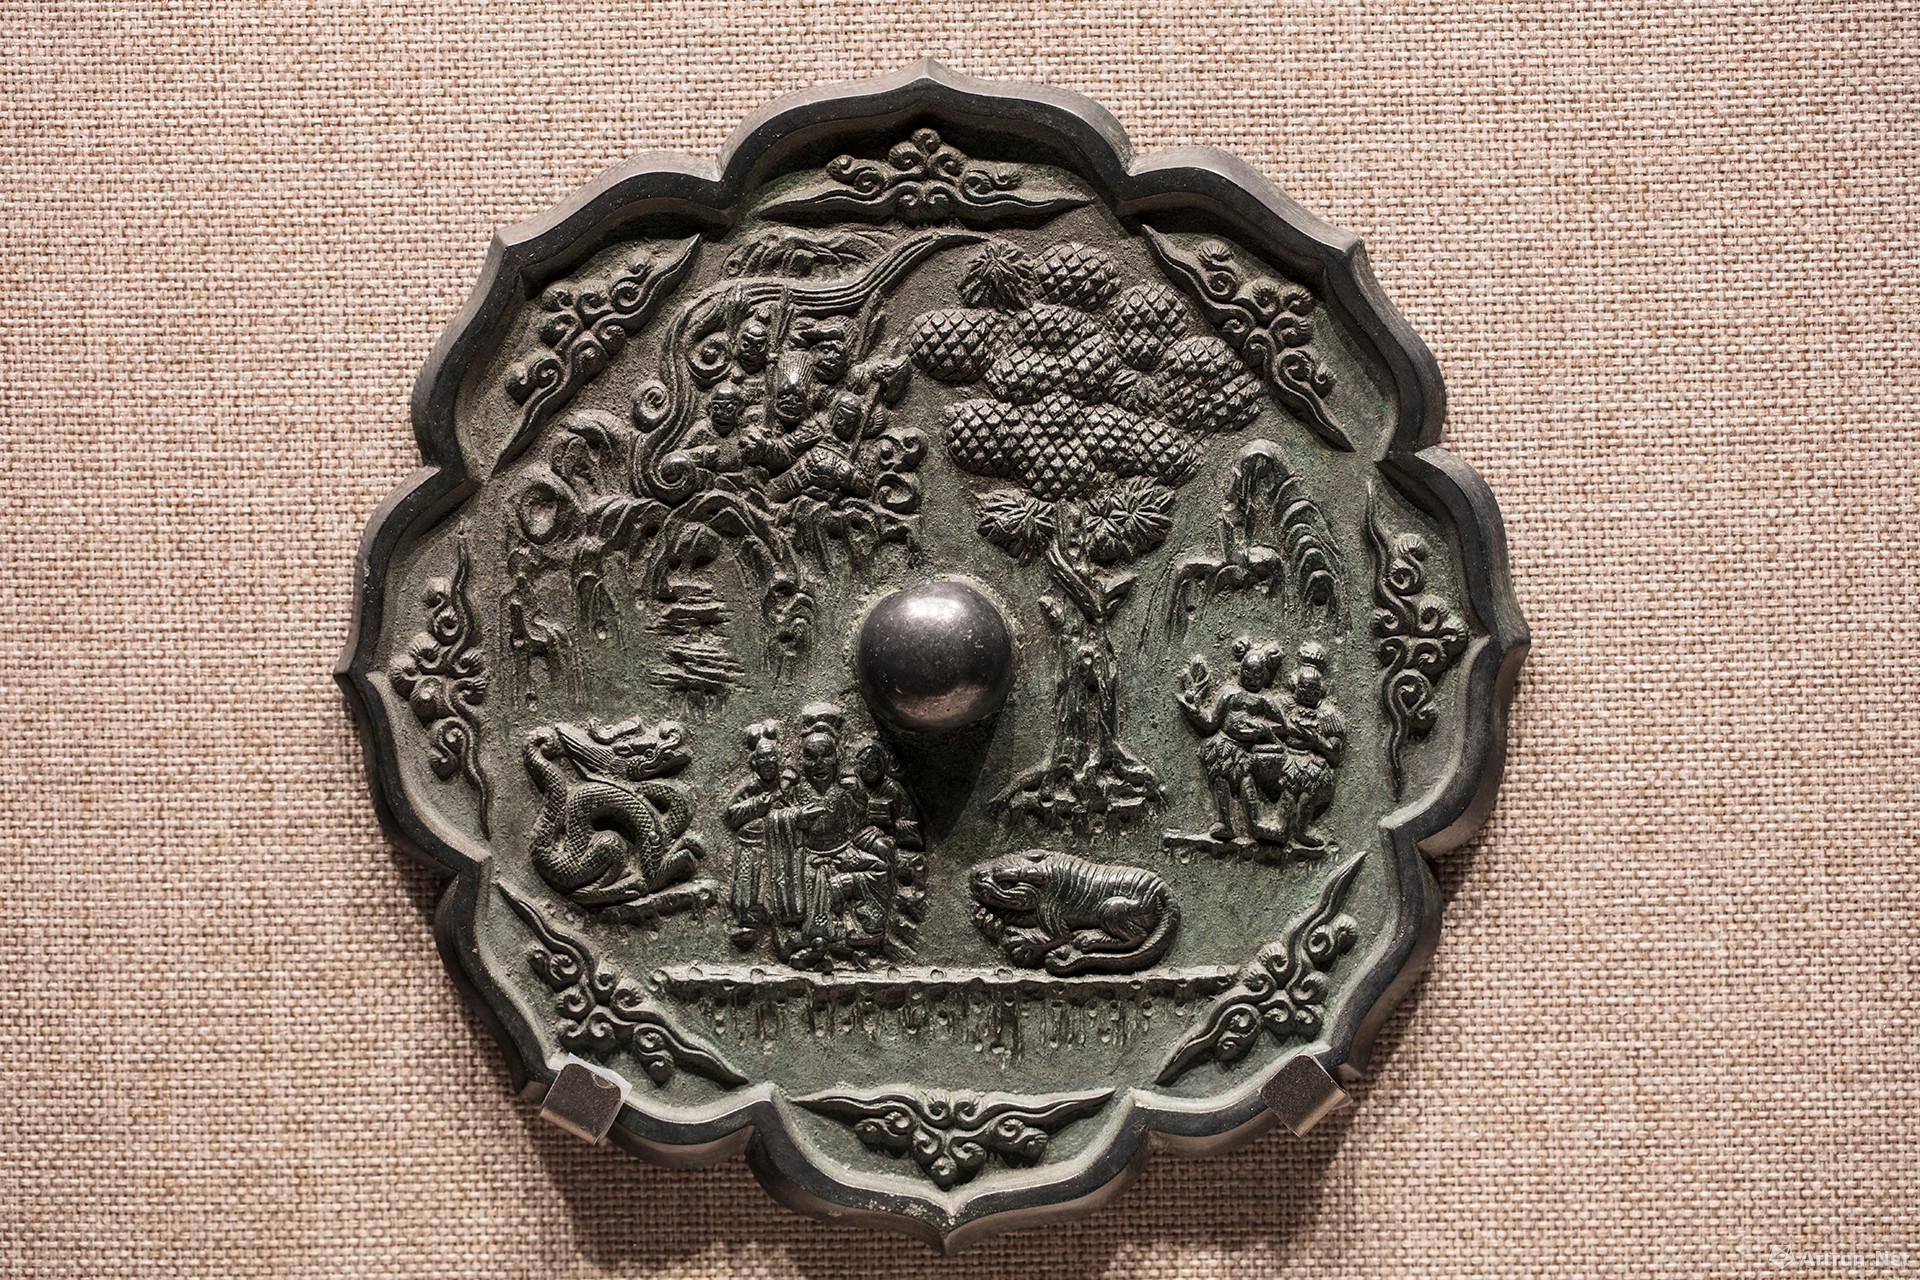 现场五面中国铭文铜镜罕见齐聚在清华艺博看见古代铜镜三千年